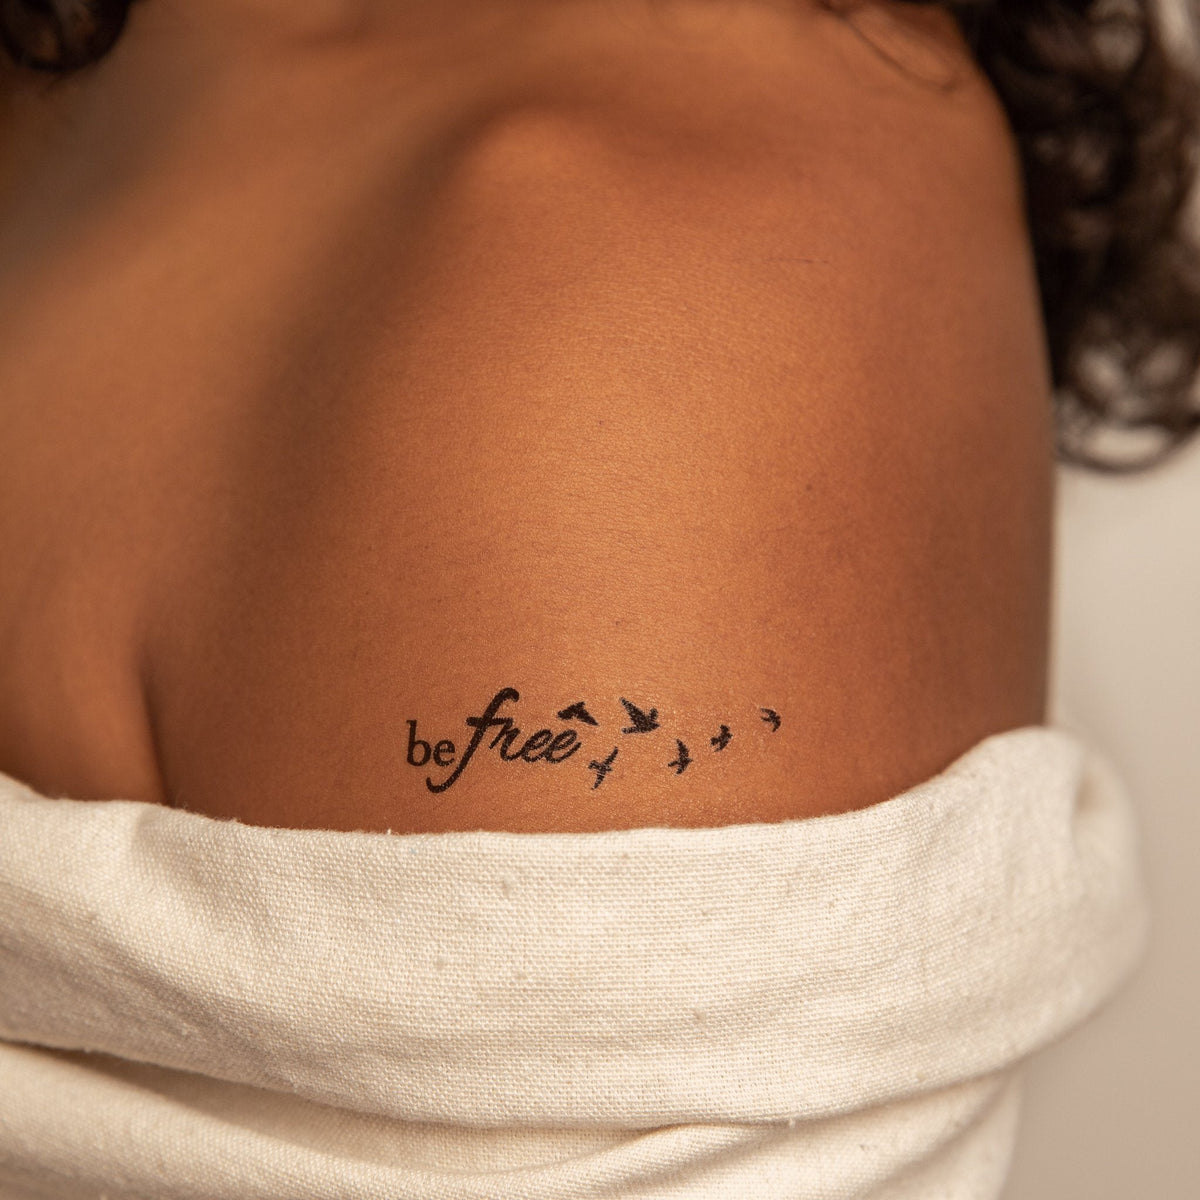 dare to be free tattoo idea  Trendy tattoos, Tattoos for women, Free  tattoo